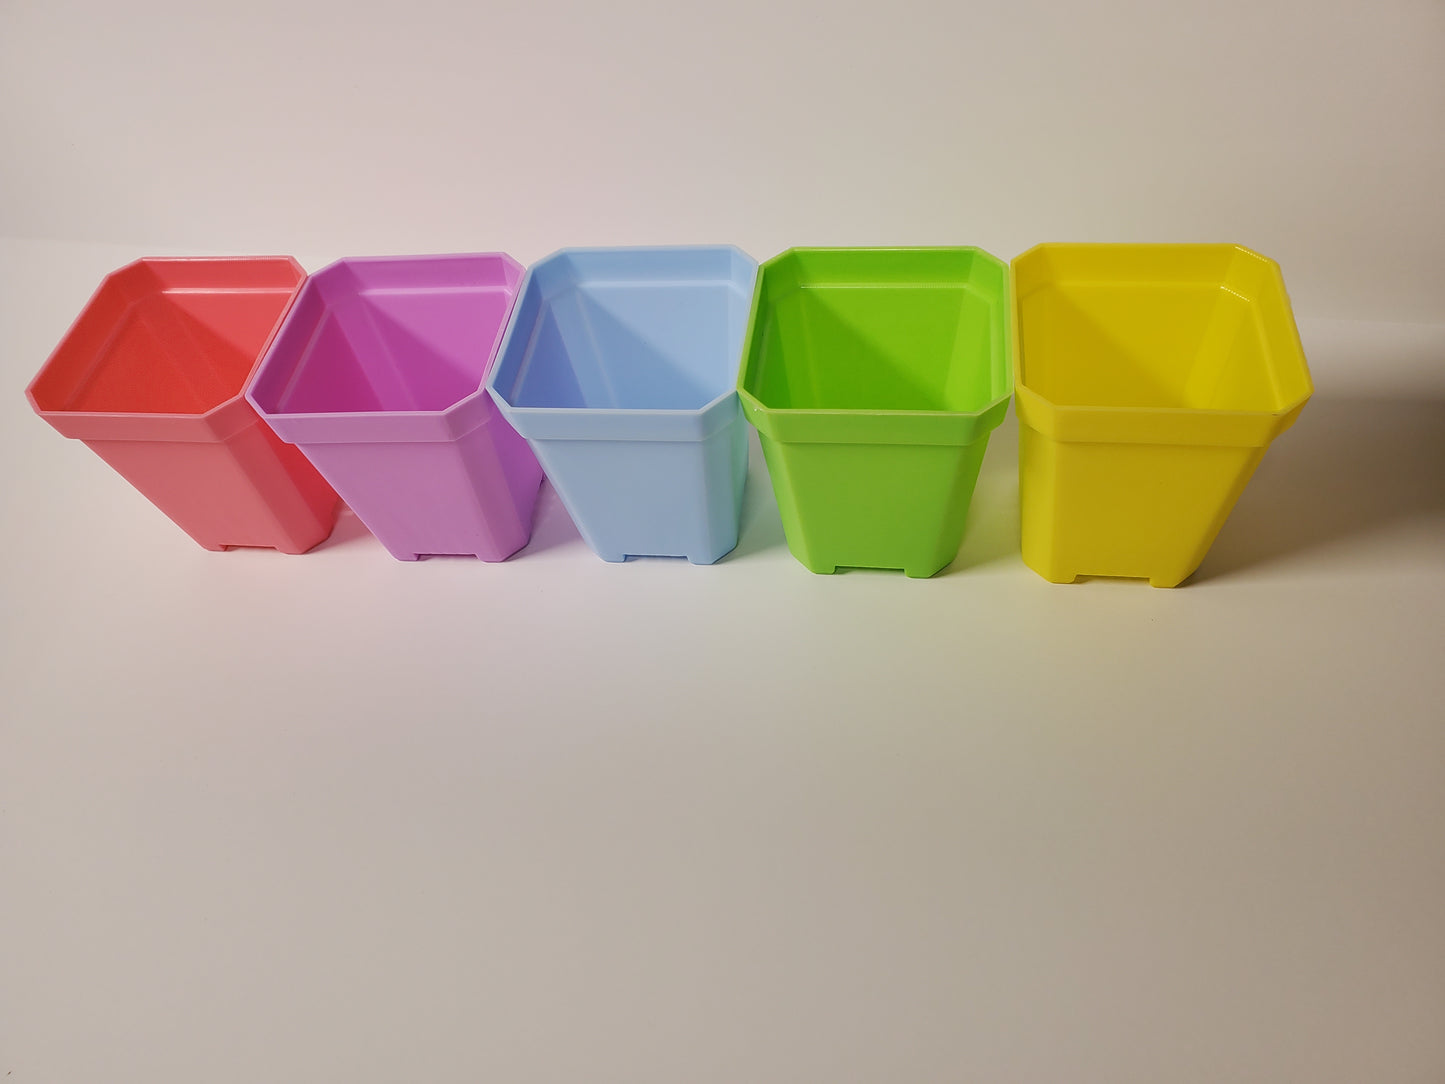 Pots - Square 3" various color